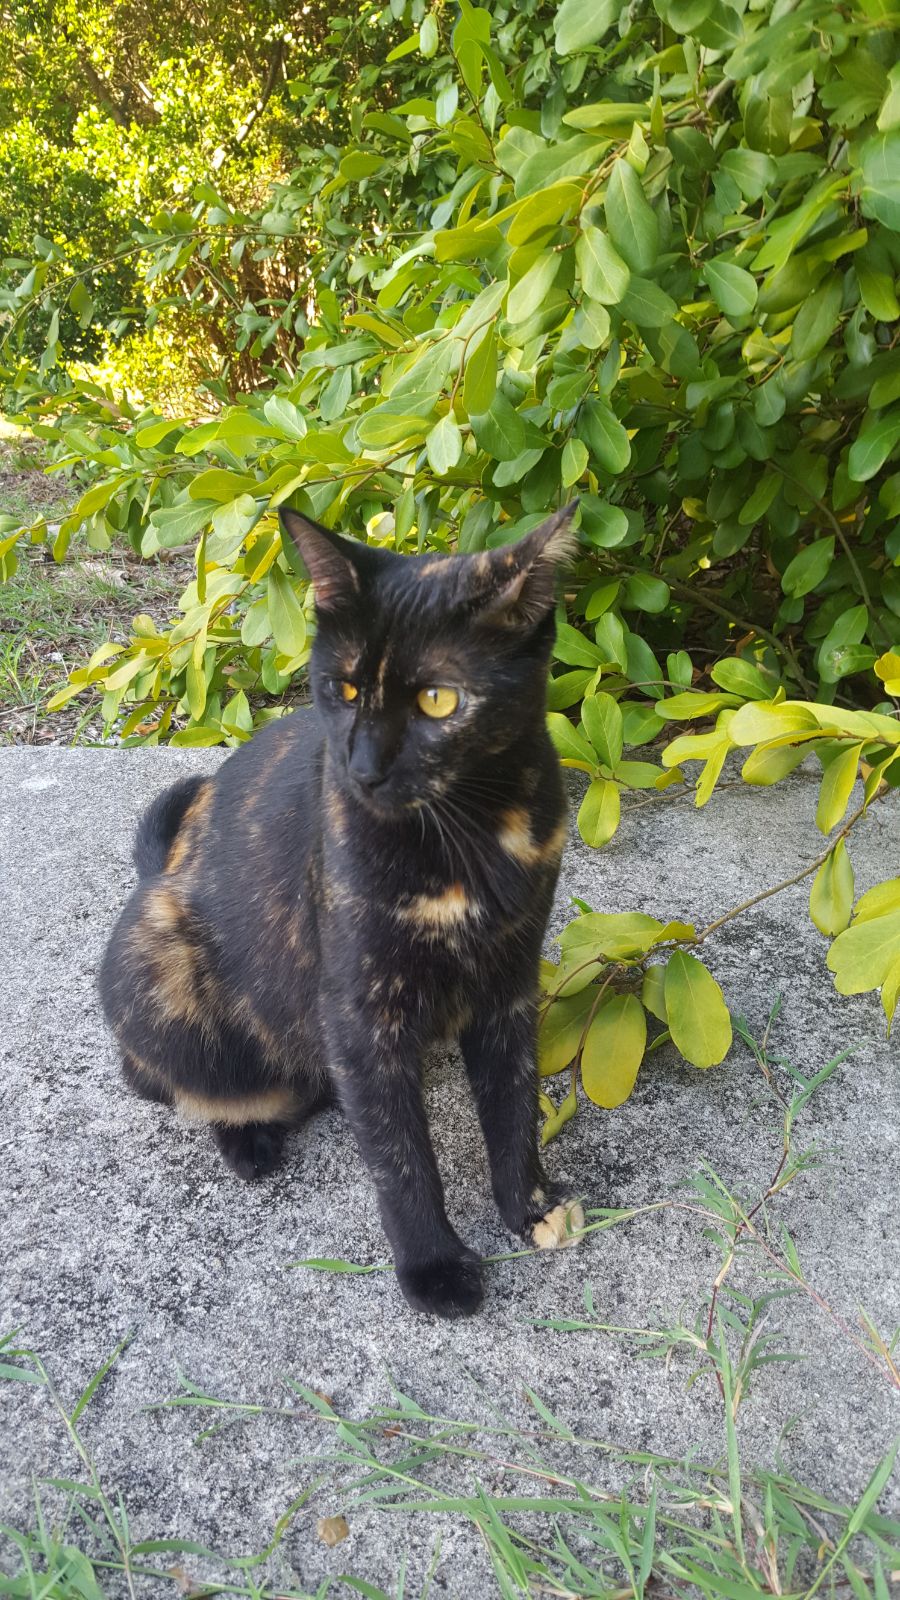 Image of Gigi, Lost Cat